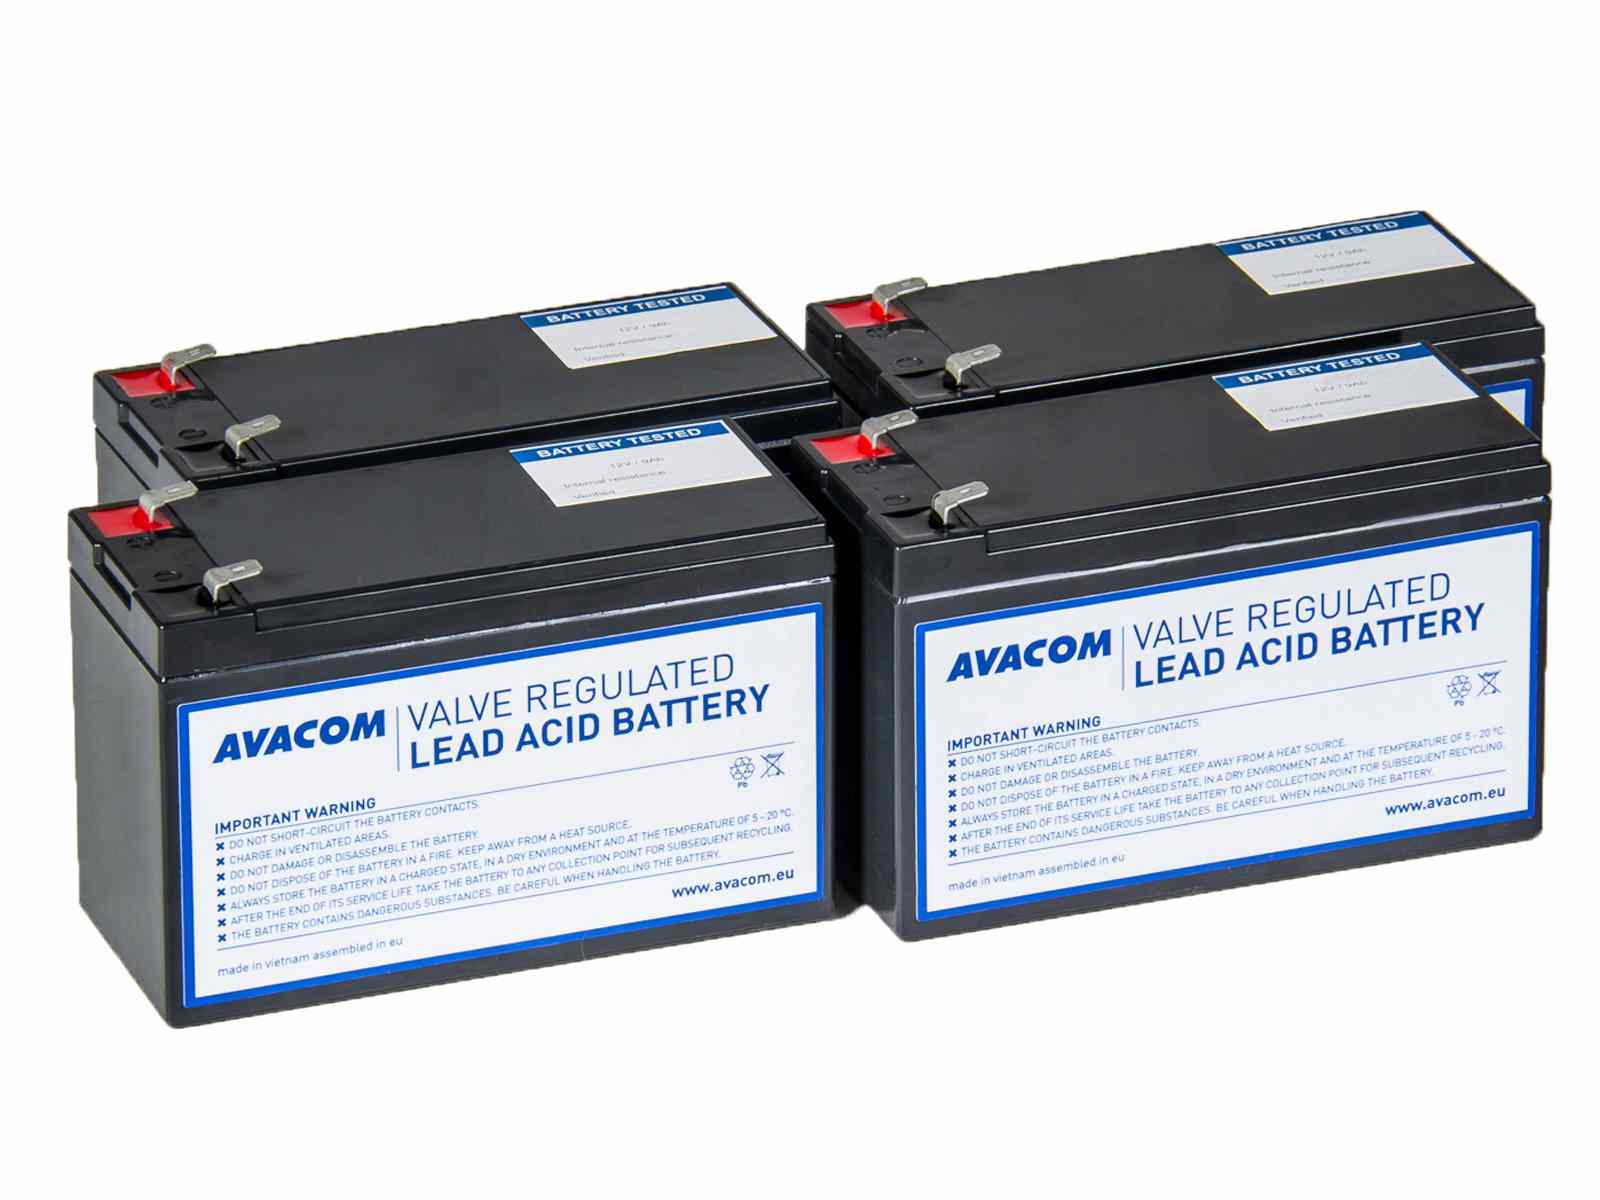 AVACOM RBC157 - kit pro renovaci baterie (4ks baterií)0 